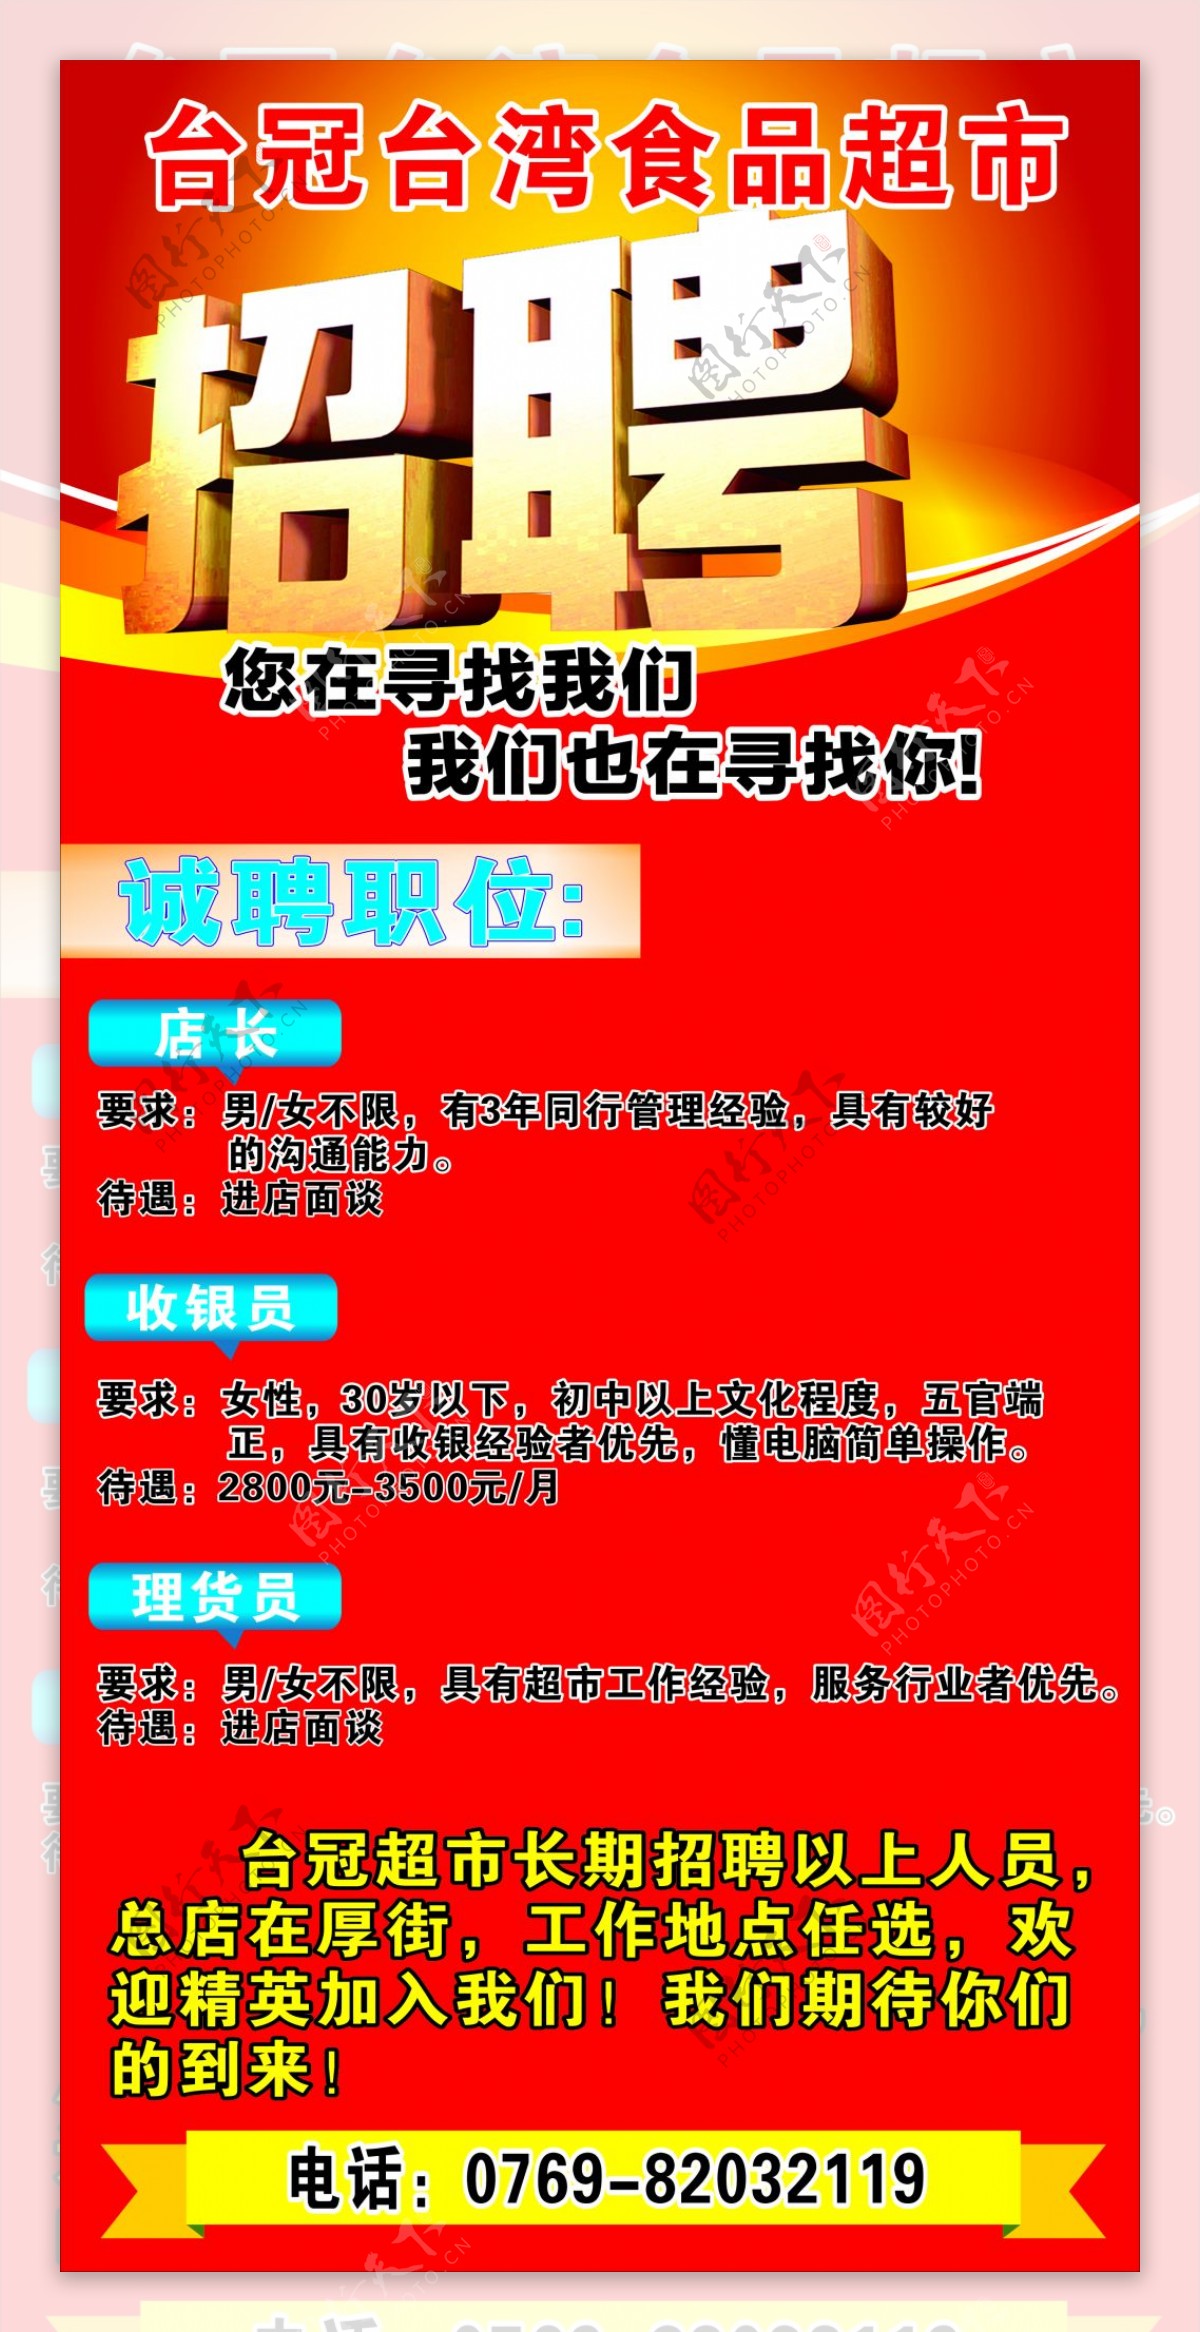 台冠台湾食品超市招聘广告